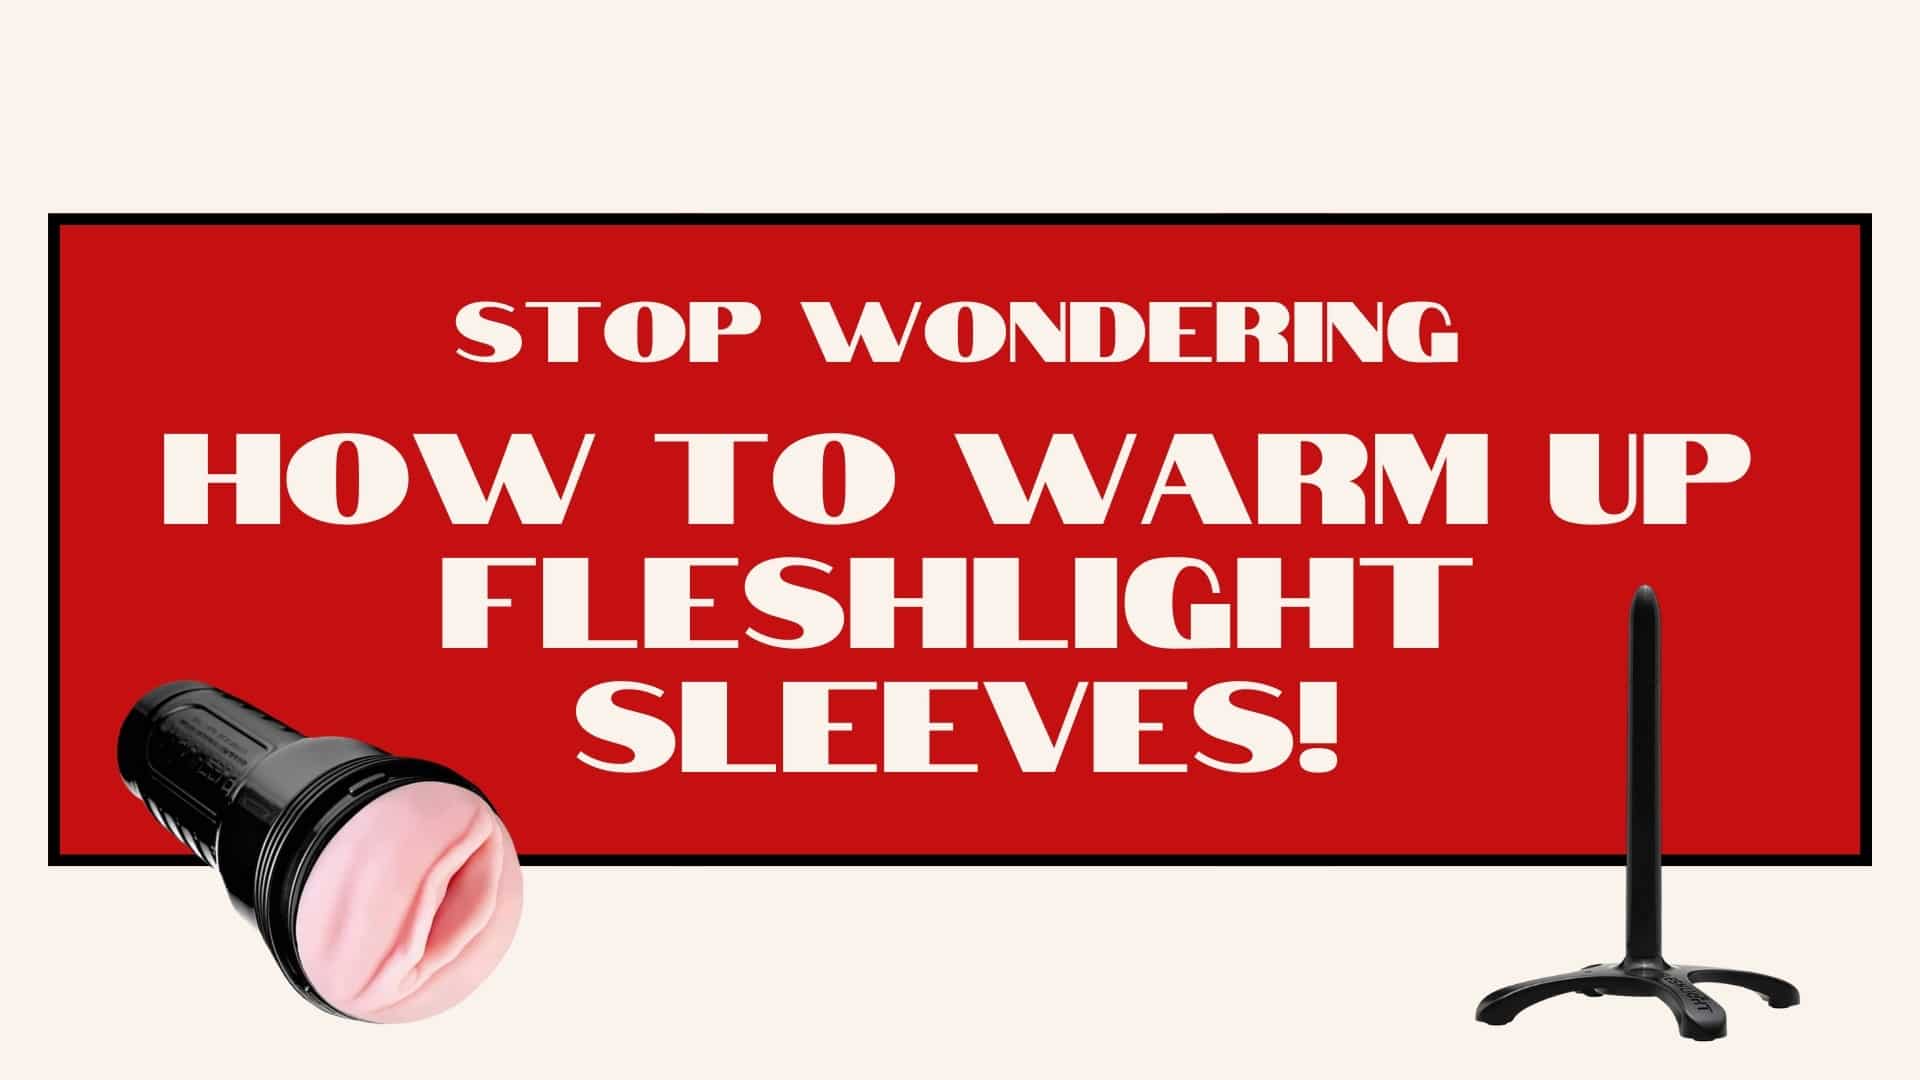 6 Amazing Methods to Warm Up Fleshlight Sleeves!